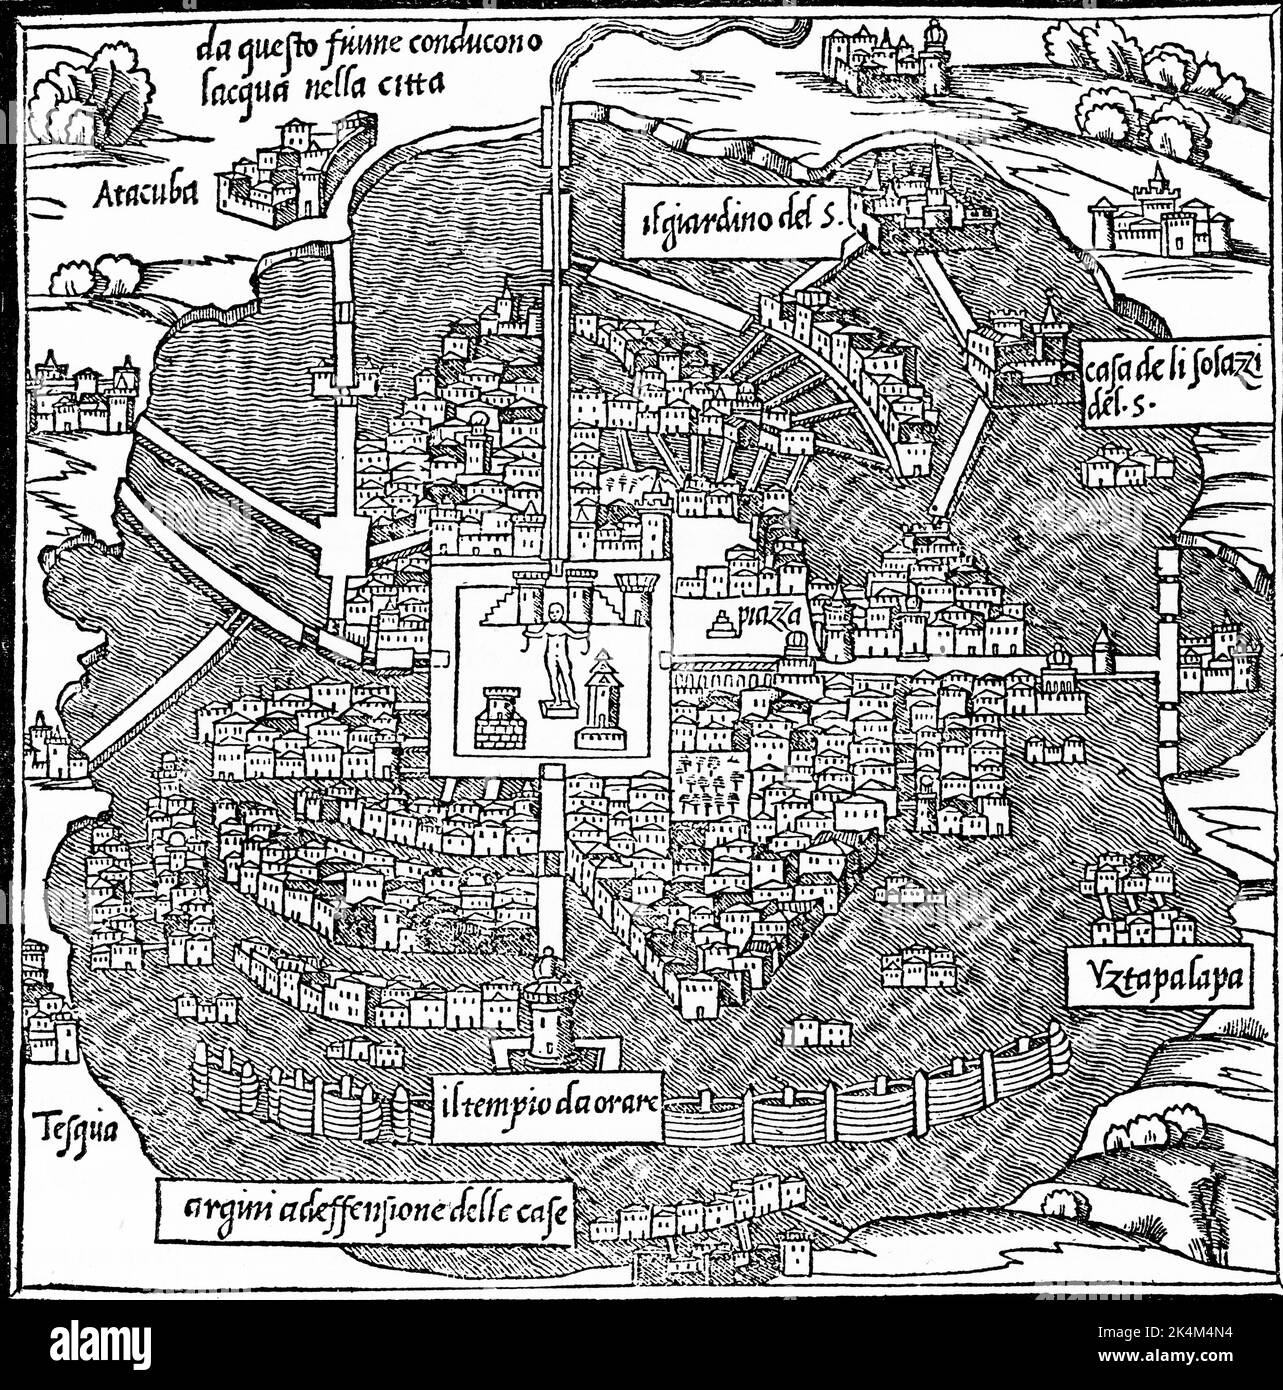 ''Temistitan' (Tenochtitlan, modern Mexico City), 1547. By Benedetto Bordone (1460-1531). A plan of 'Temistitan' (Tenochtitlan, modern Mexico City) before its destruction by Hernán Cortés (1485-1547). From Benedetto Bordone's 'Isolario', 1547. Stock Photo